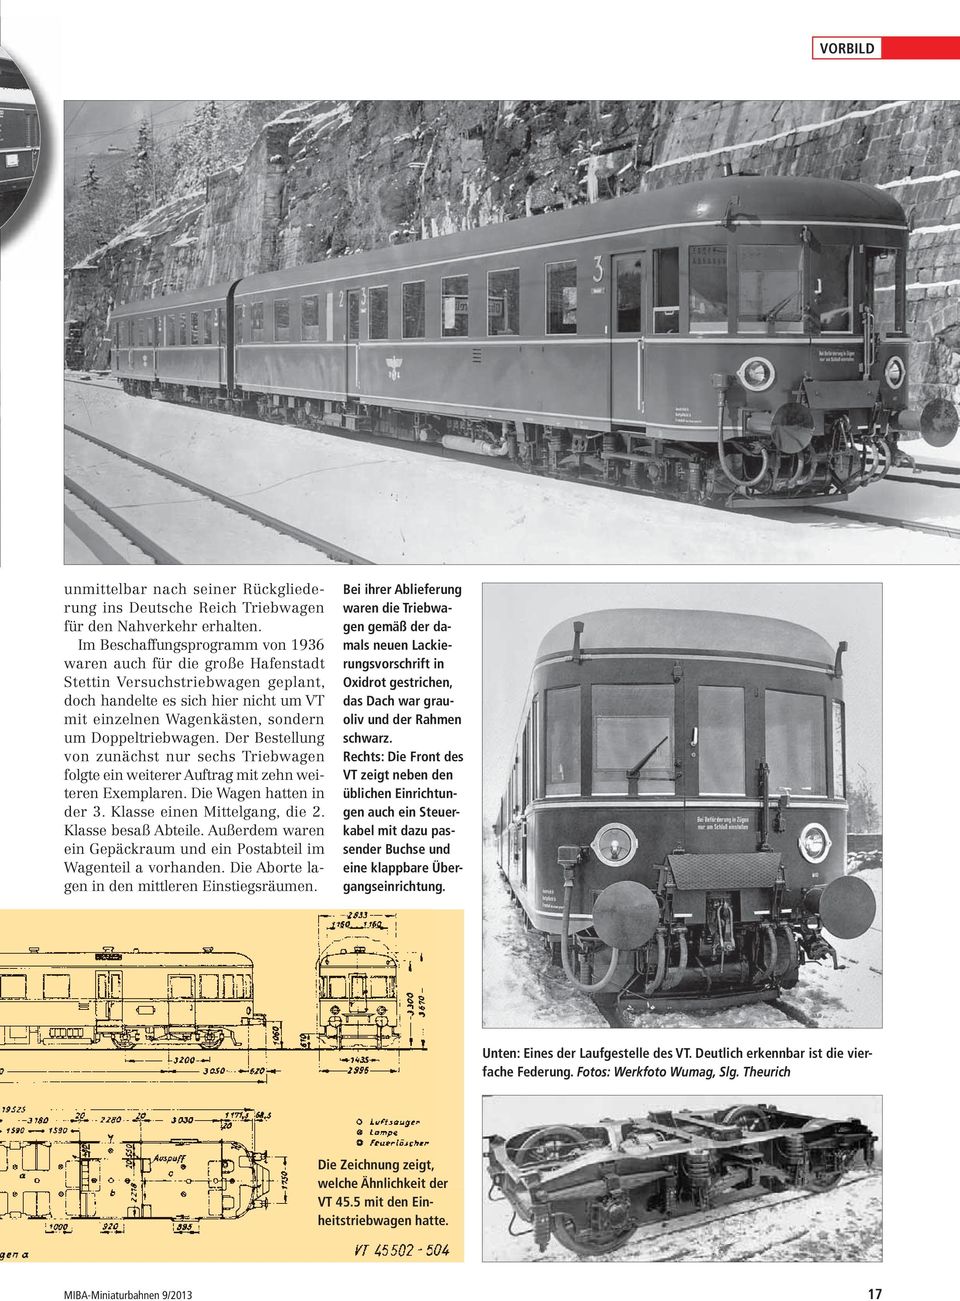 Der Bestellung von zunächst nur sechs Triebwagen folgte ein weiterer Auftrag mit zehn weiteren Exemplaren. Die Wagen hatten in der 3. Klasse einen Mittelgang, die 2. Klasse besaß Abteile.